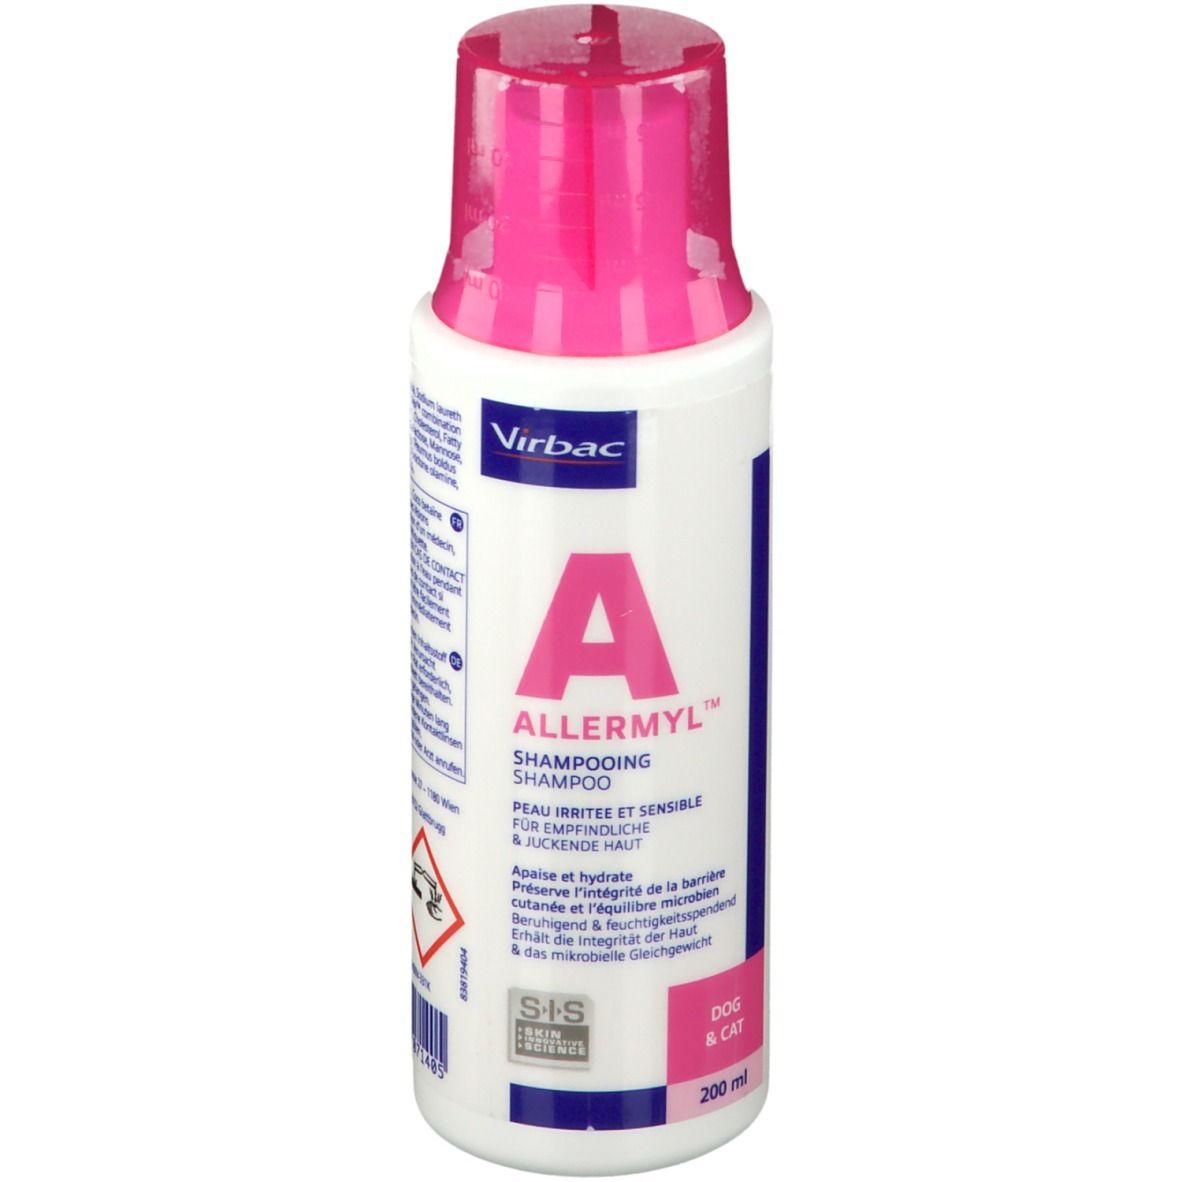 Allermyl® Shampoo